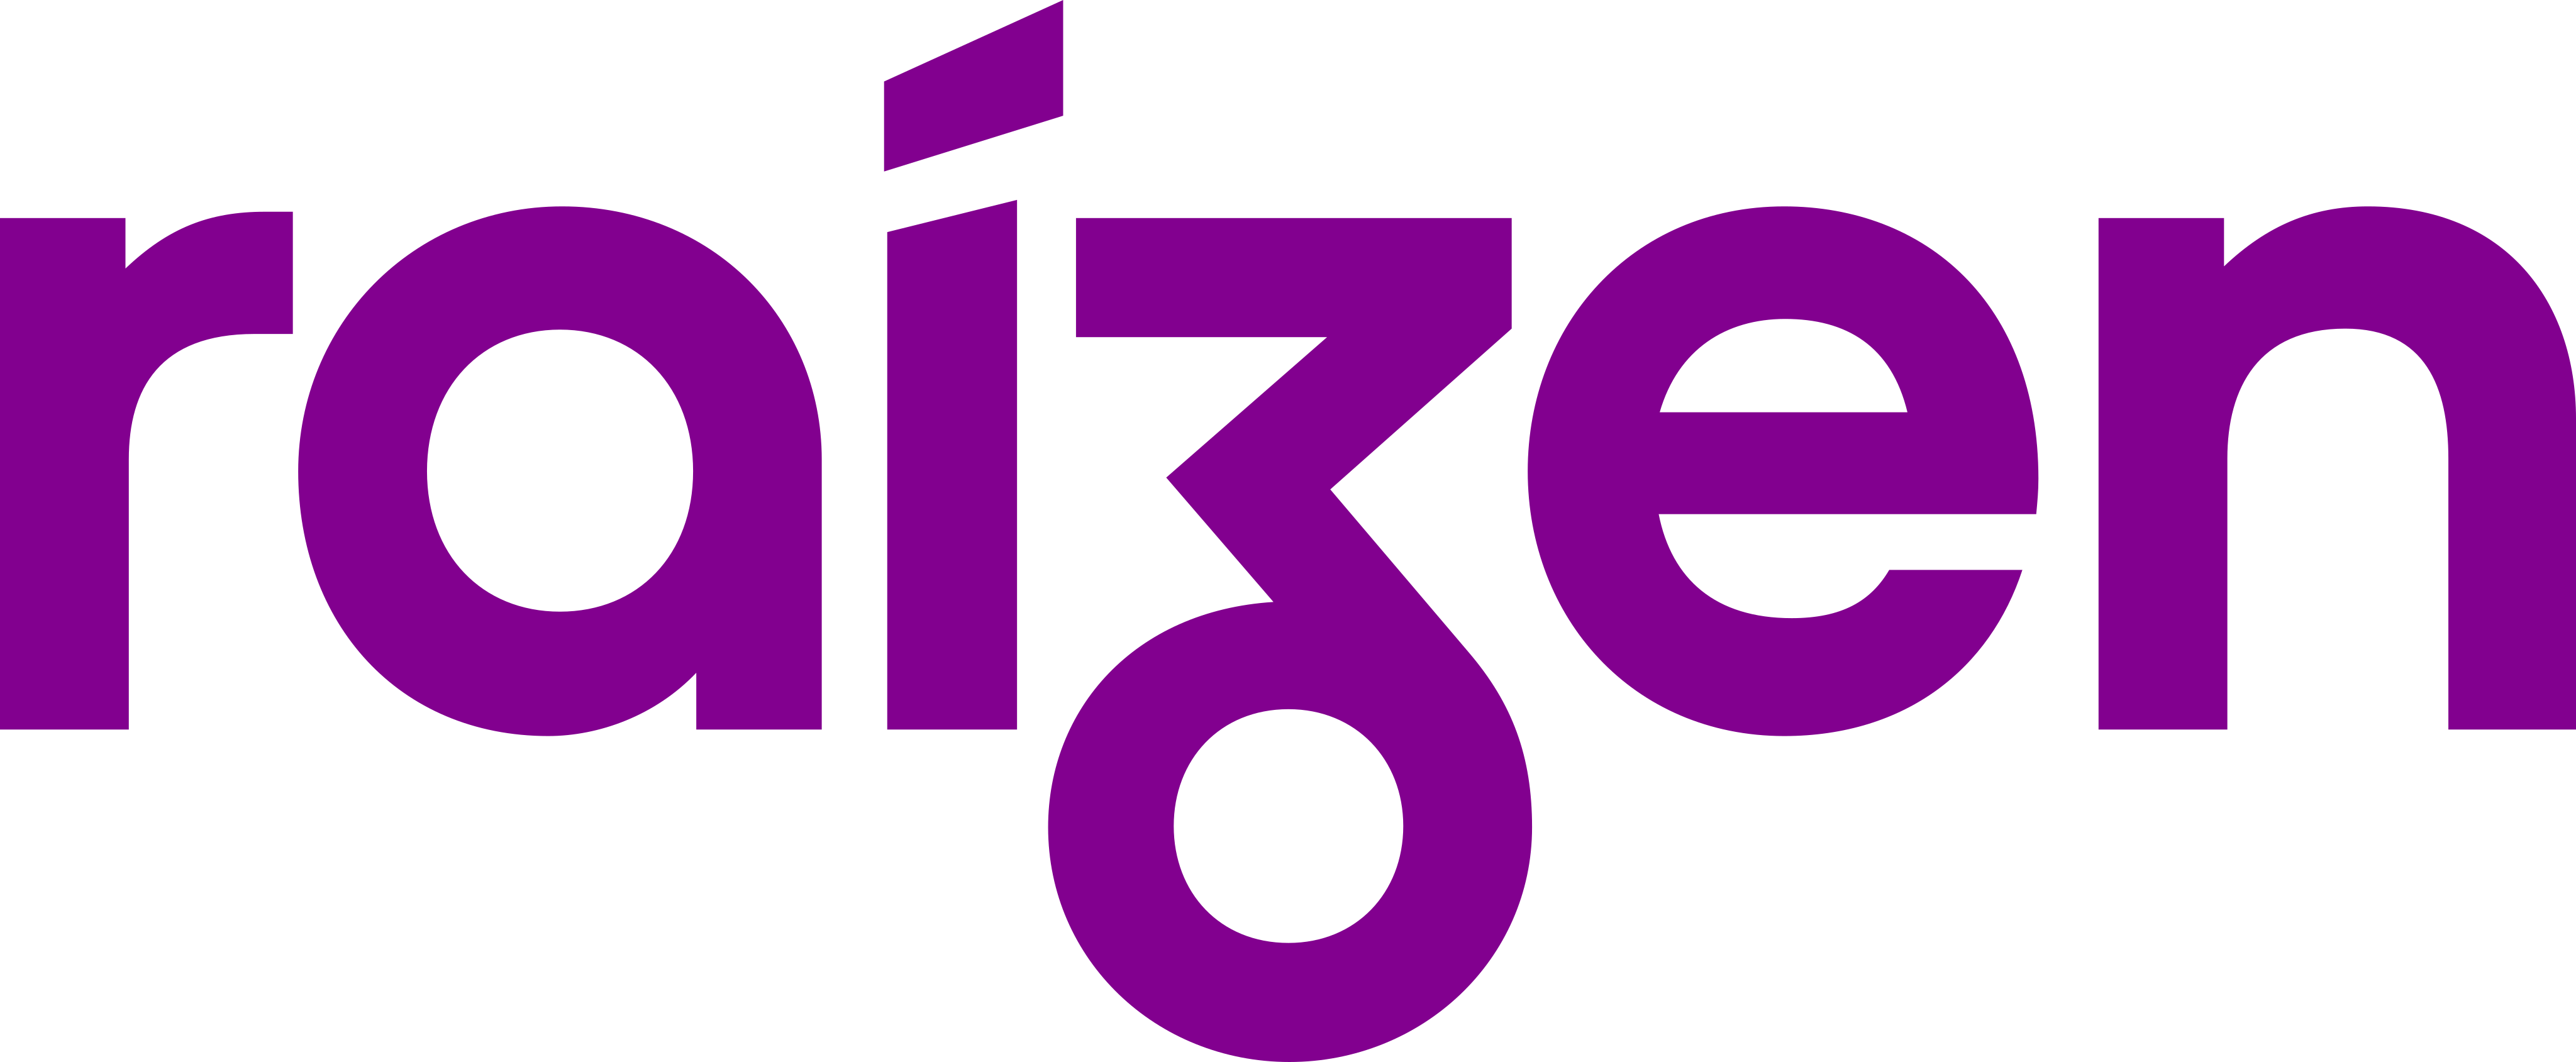 raizen-logo-1.png